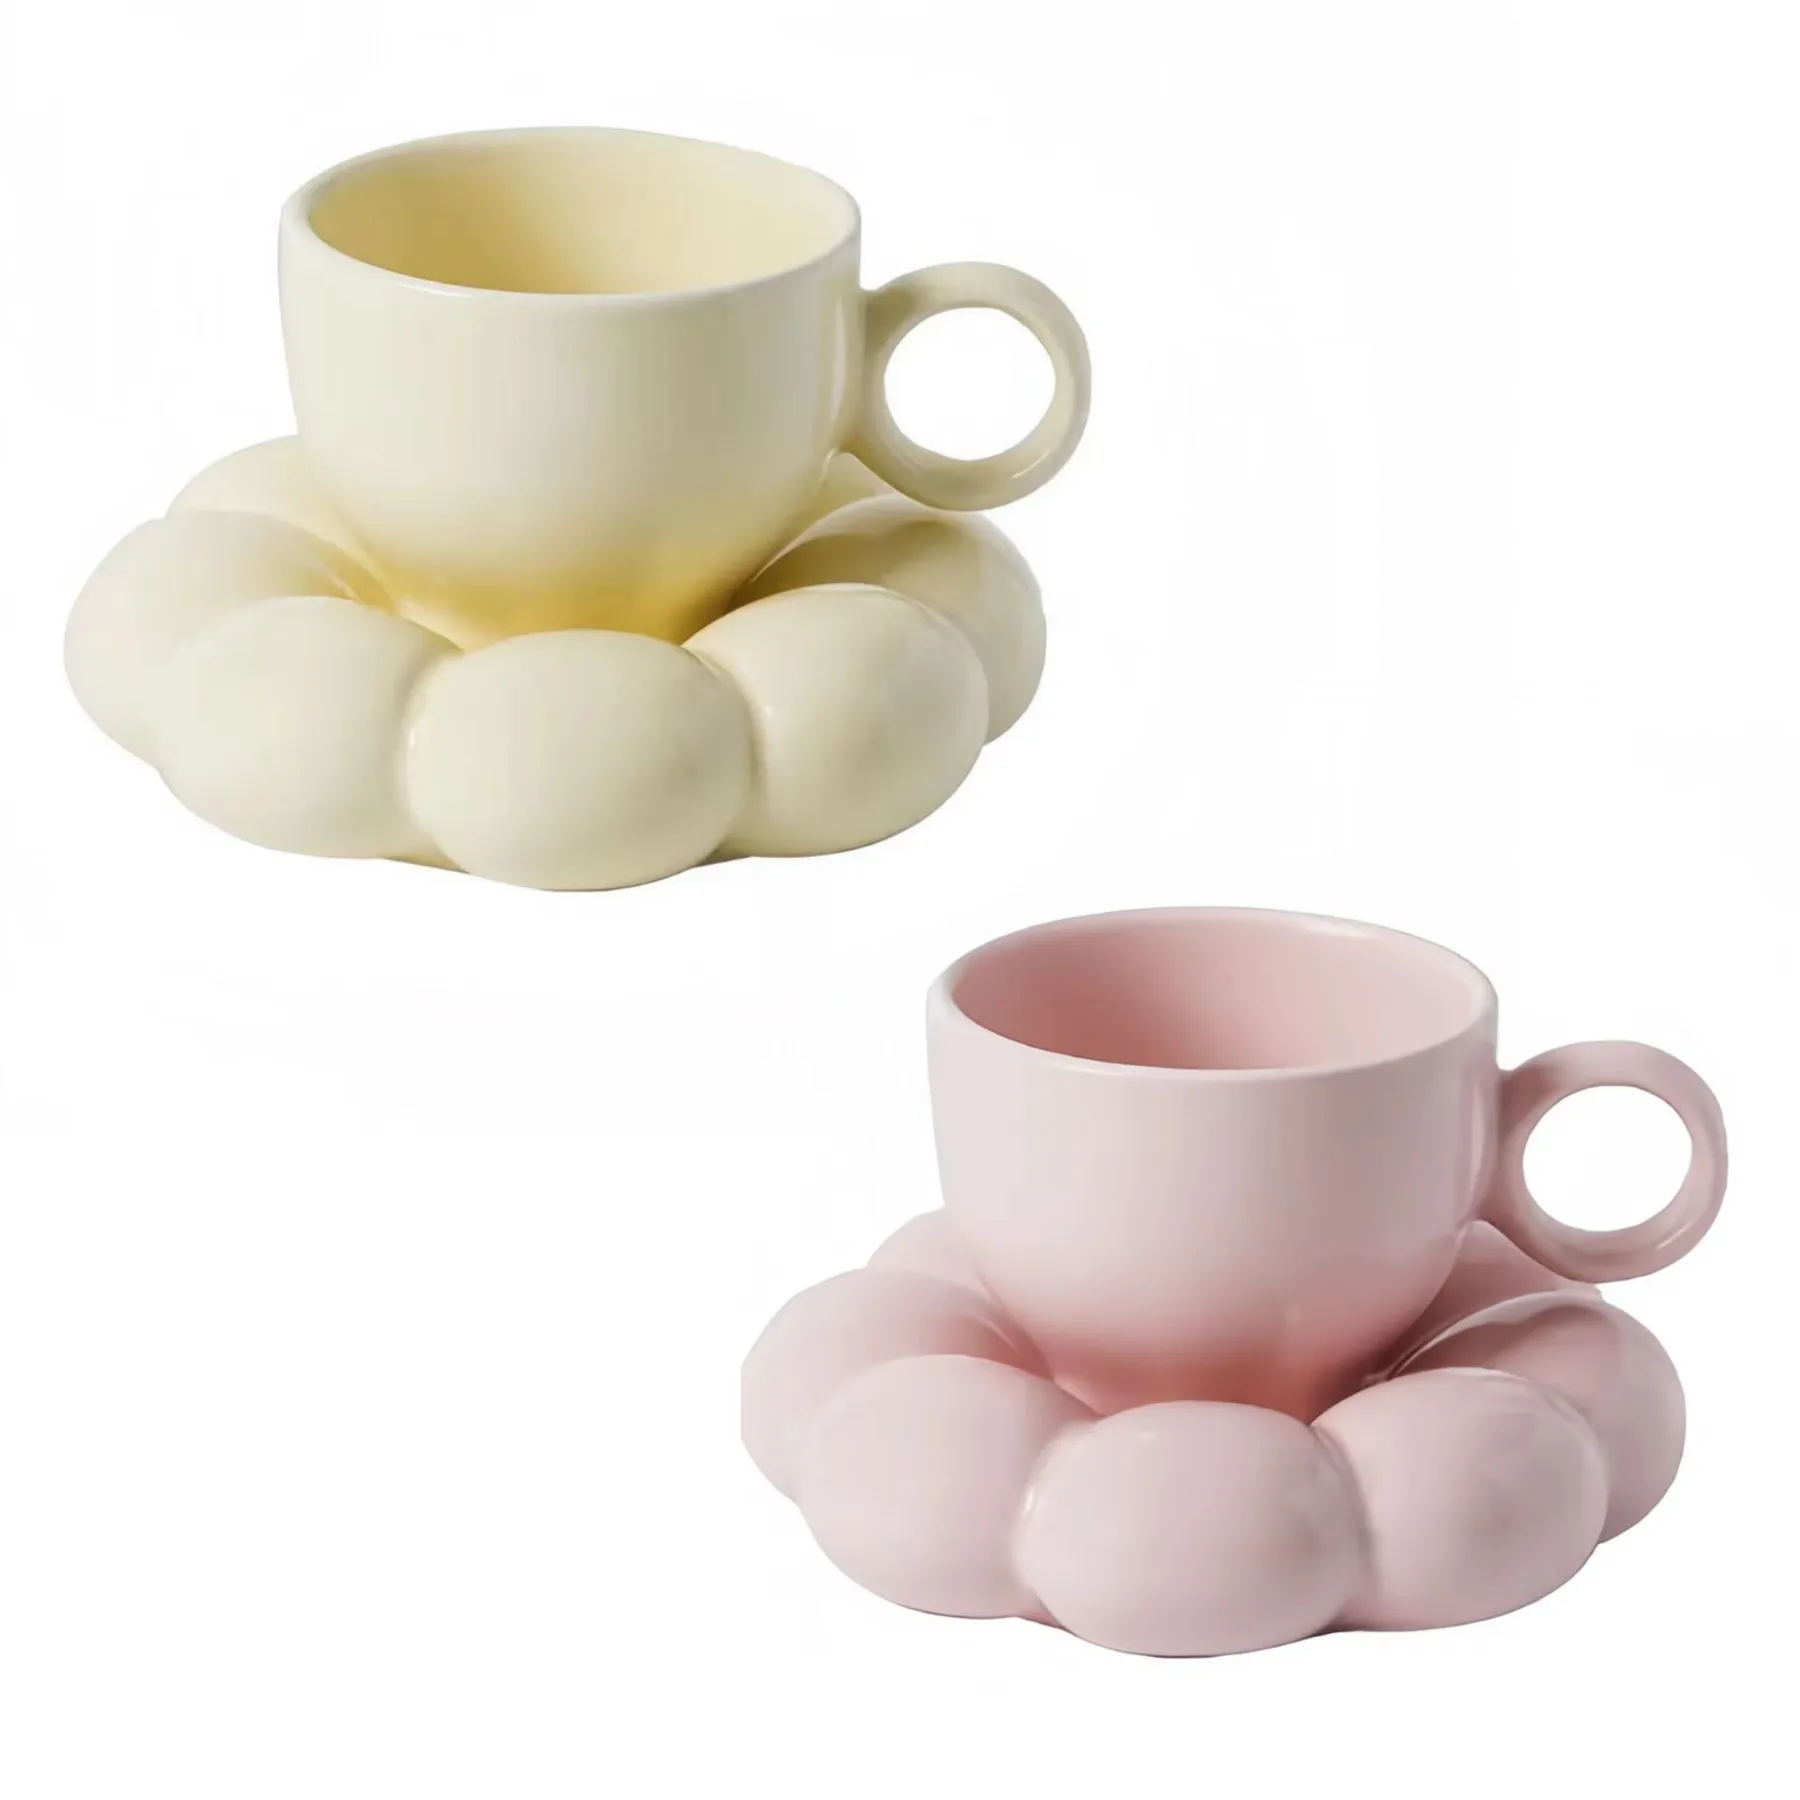 Hot Sale Unique Coffee Mug Tea Cup Set Cute Sunflower Coaster Saucer Beige pink Ceramic Cloud Coffee Tea Latte Milk Mug Cup